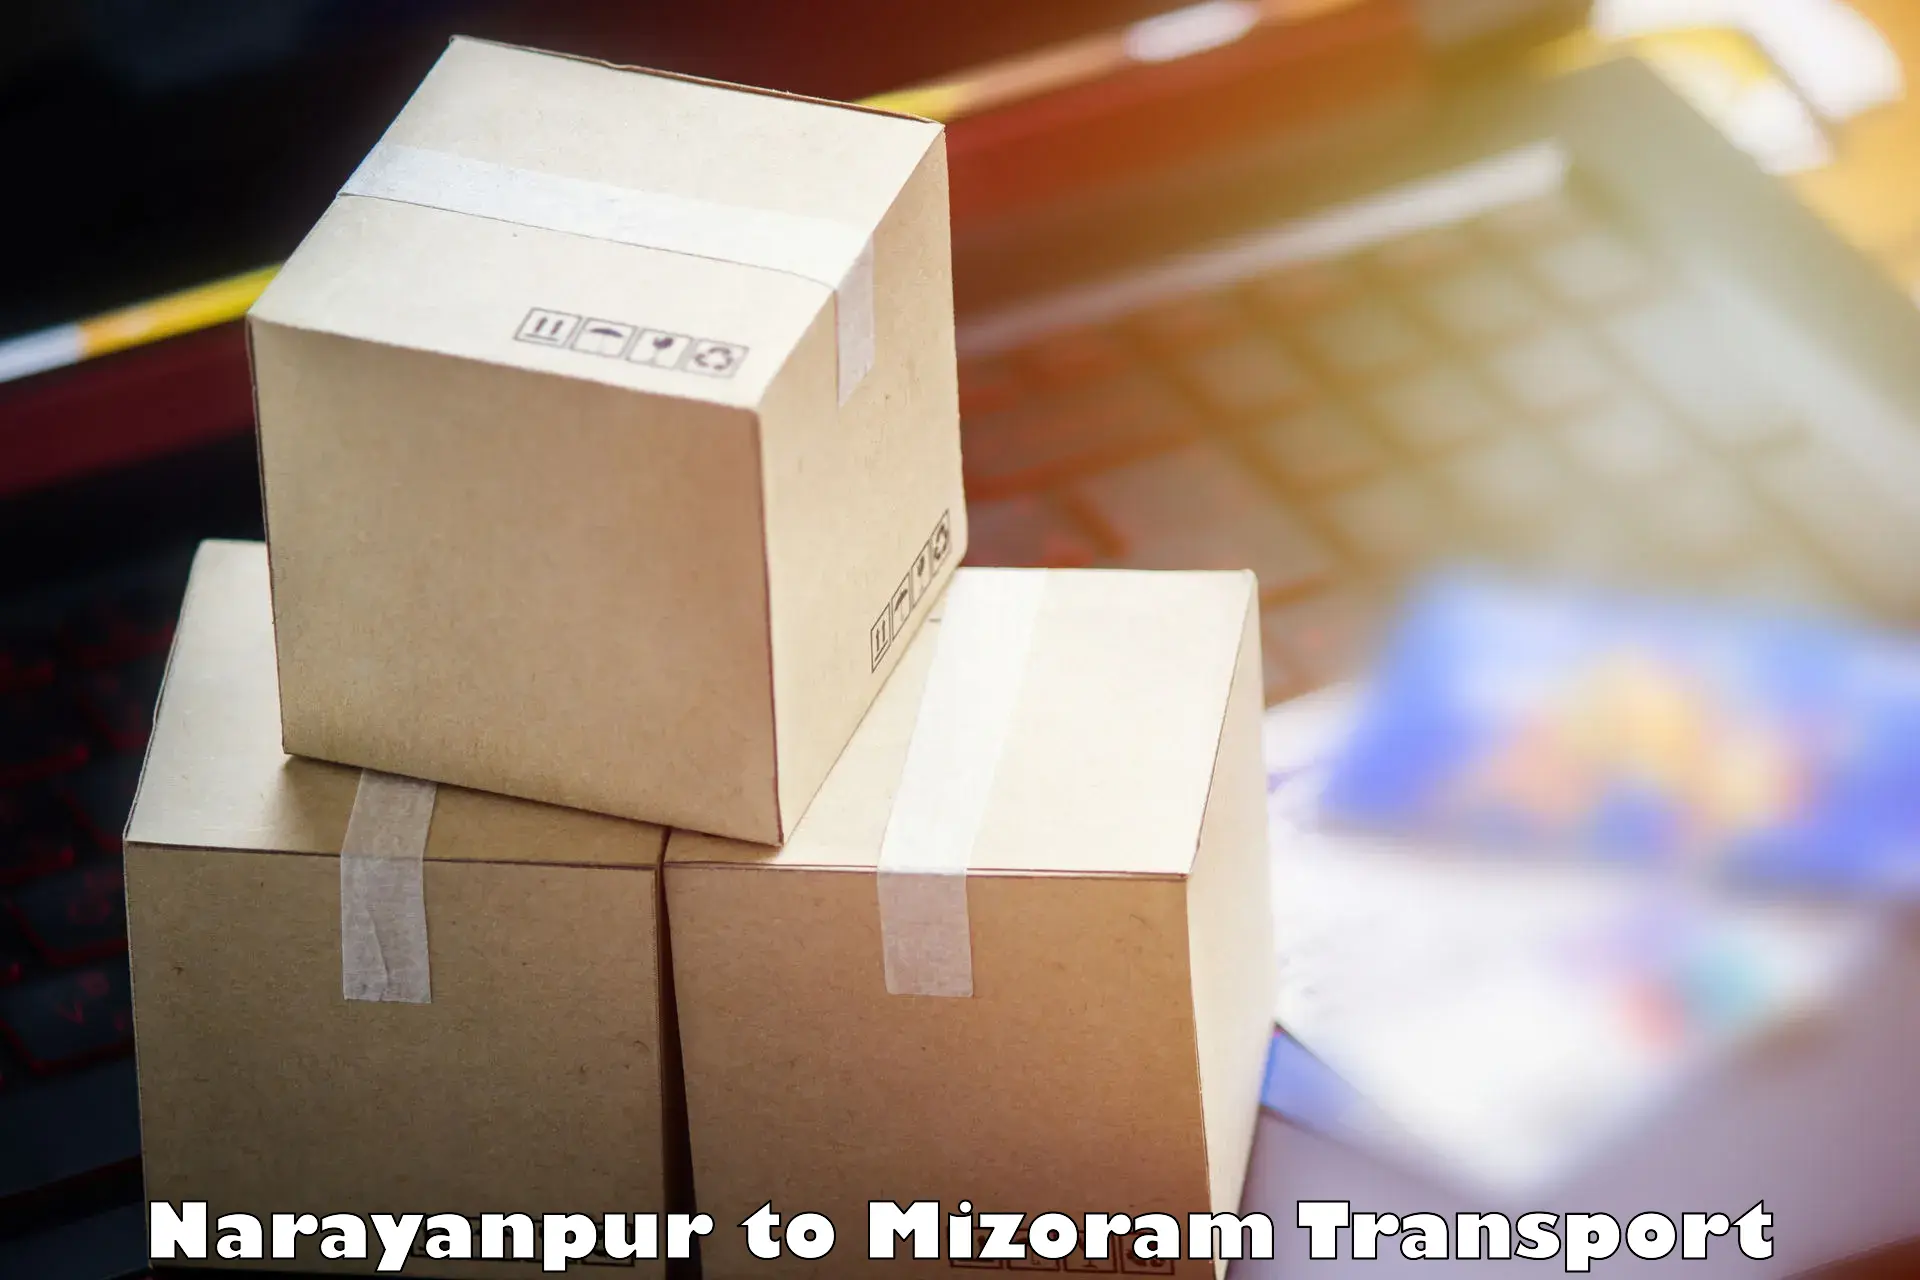 Pick up transport service Narayanpur to Mizoram University Aizawl